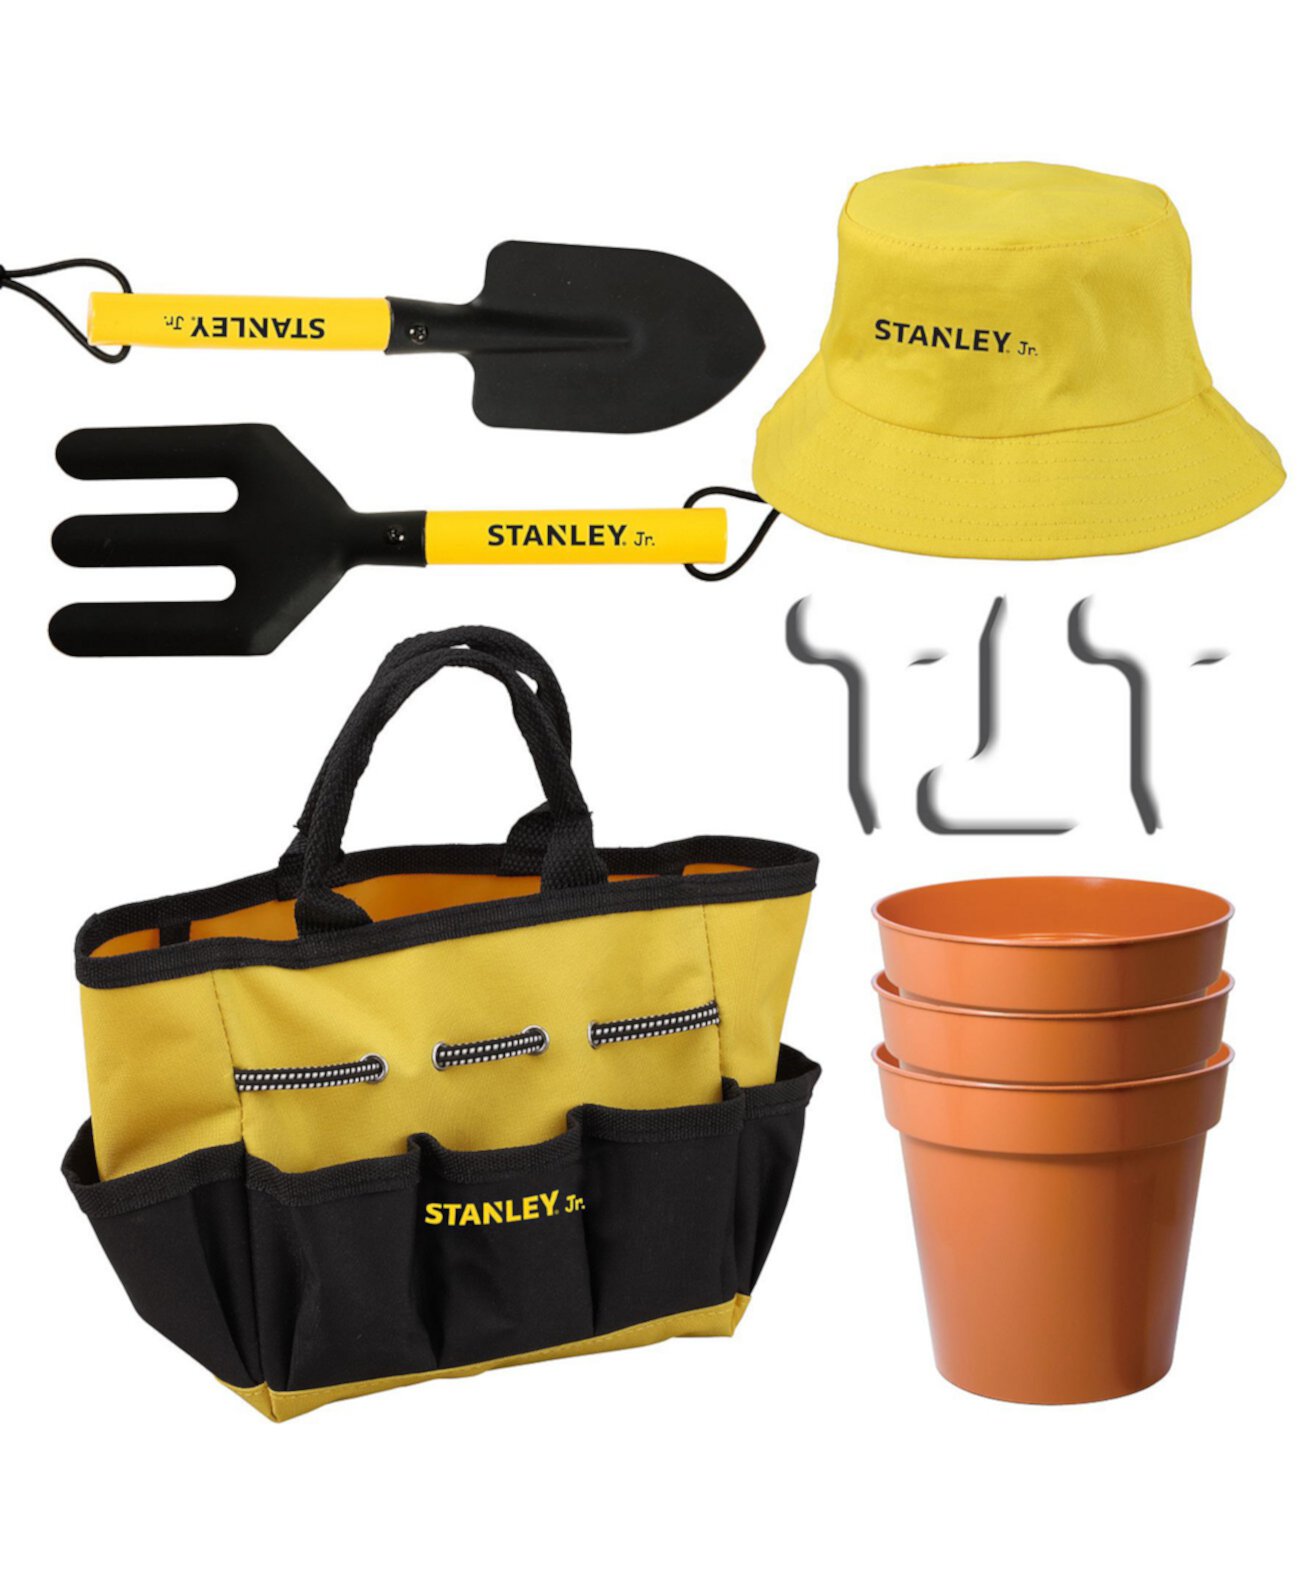 Набор садовых инструментов Stanley Jr с шляпой от солнца и сумкой для детей, 10 предметов RED TOOL BOX